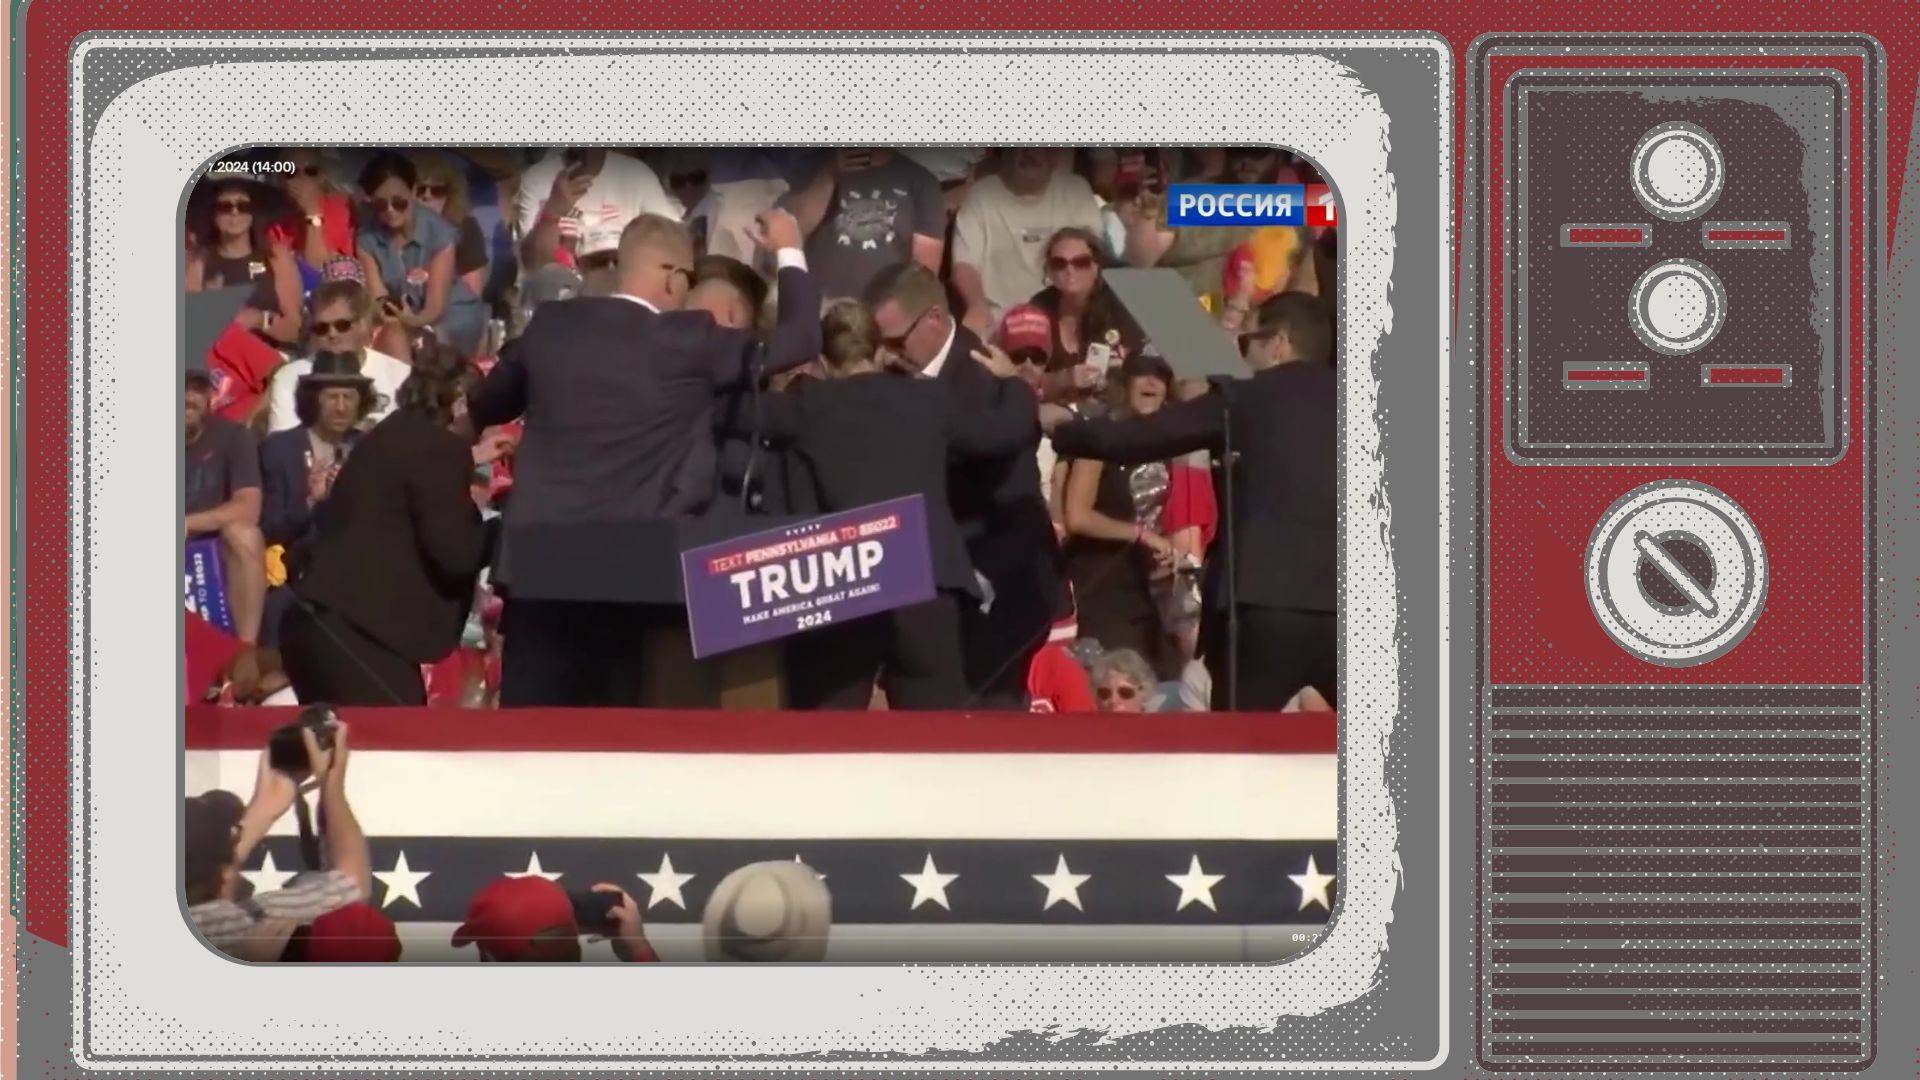 Grafika: kadr z zamachu na Trumpa w ramce starego telewizora